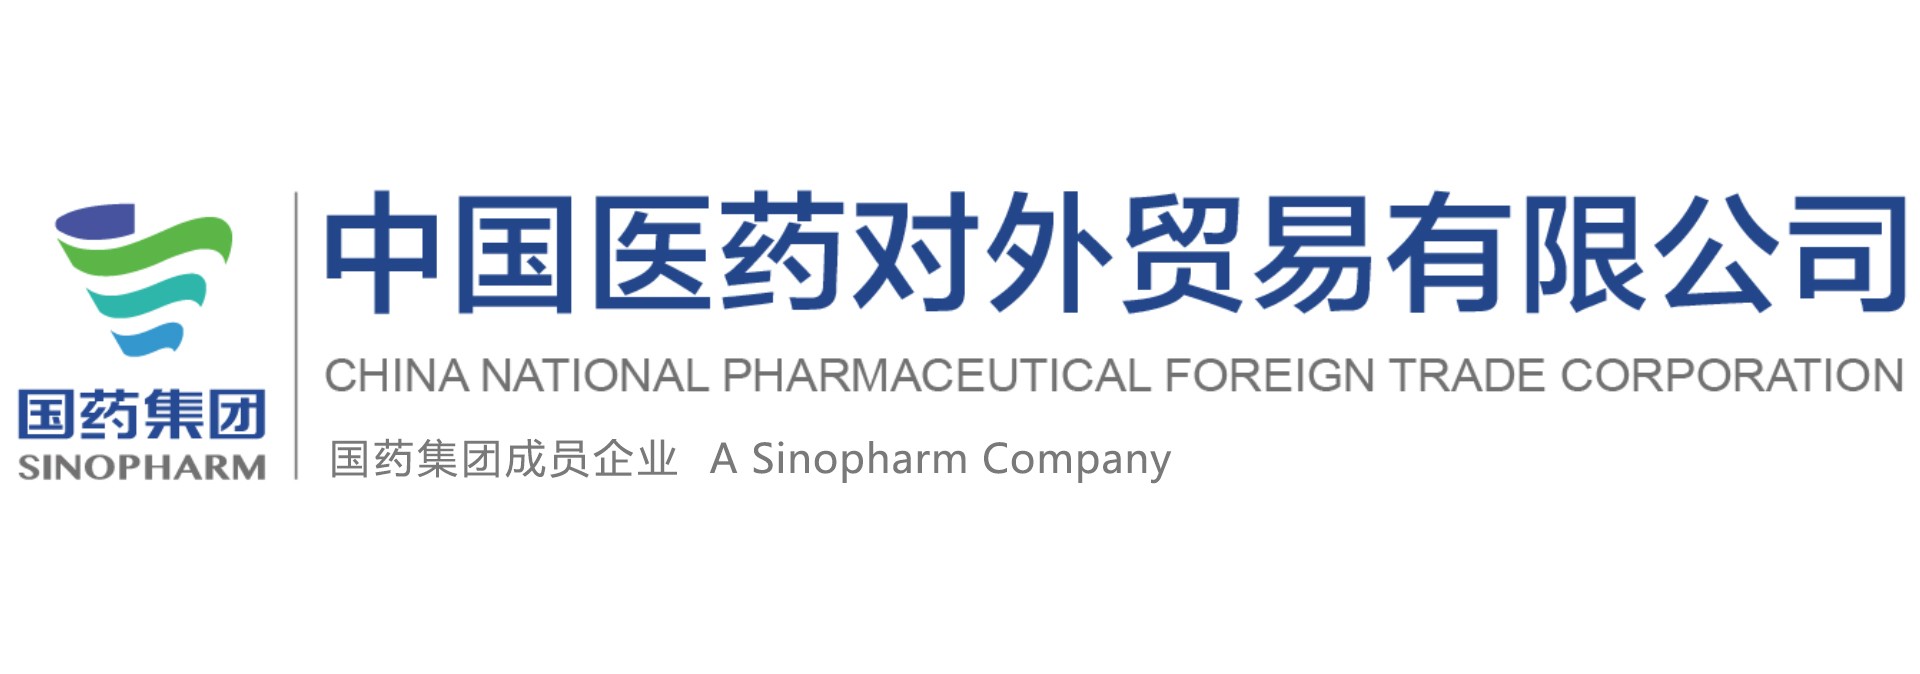 中国医药对外贸易有限公司科学仪器部